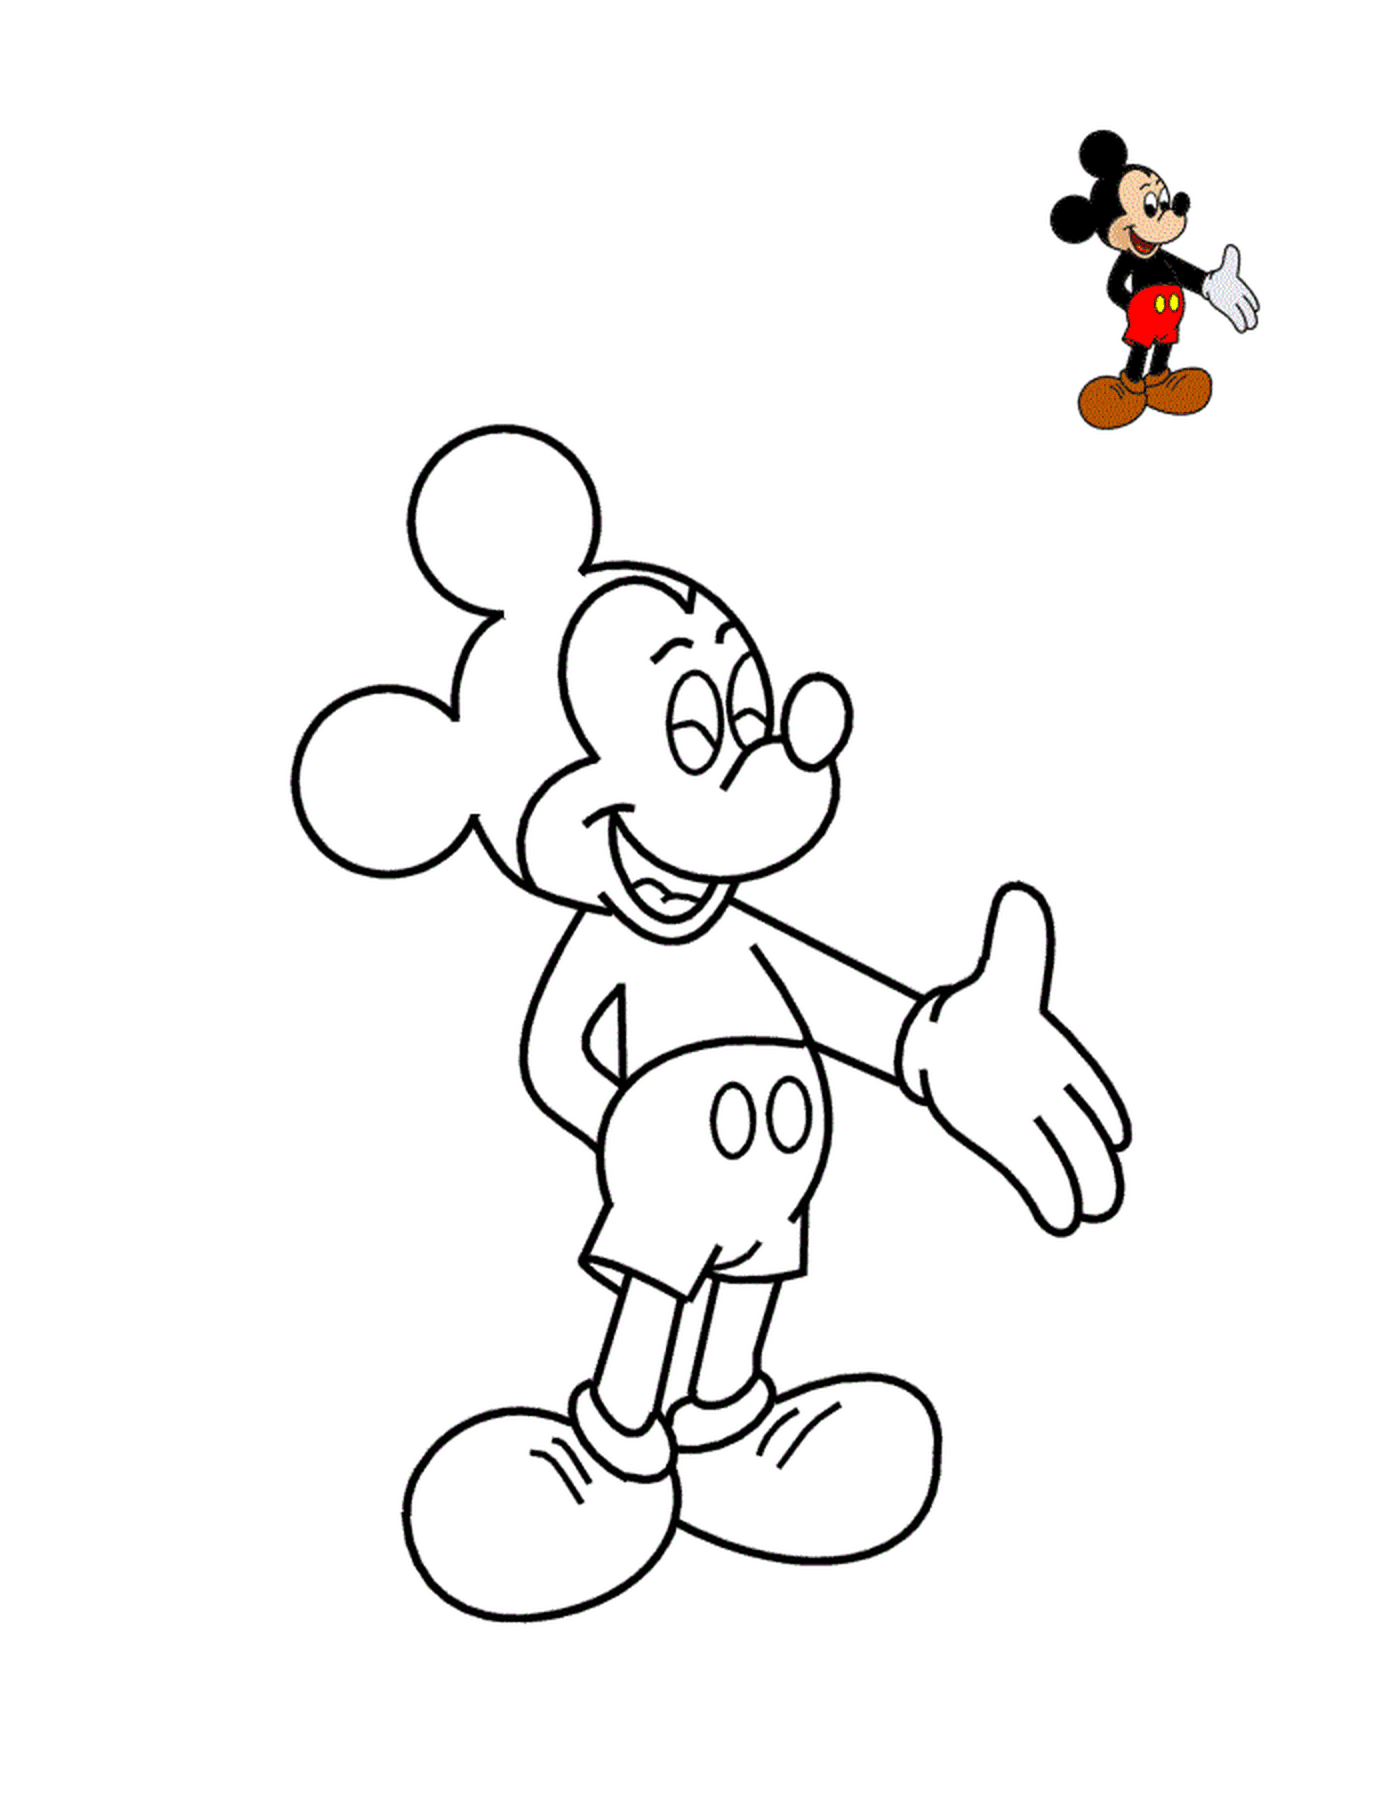  米老鼠,迪士尼乐园的象征 